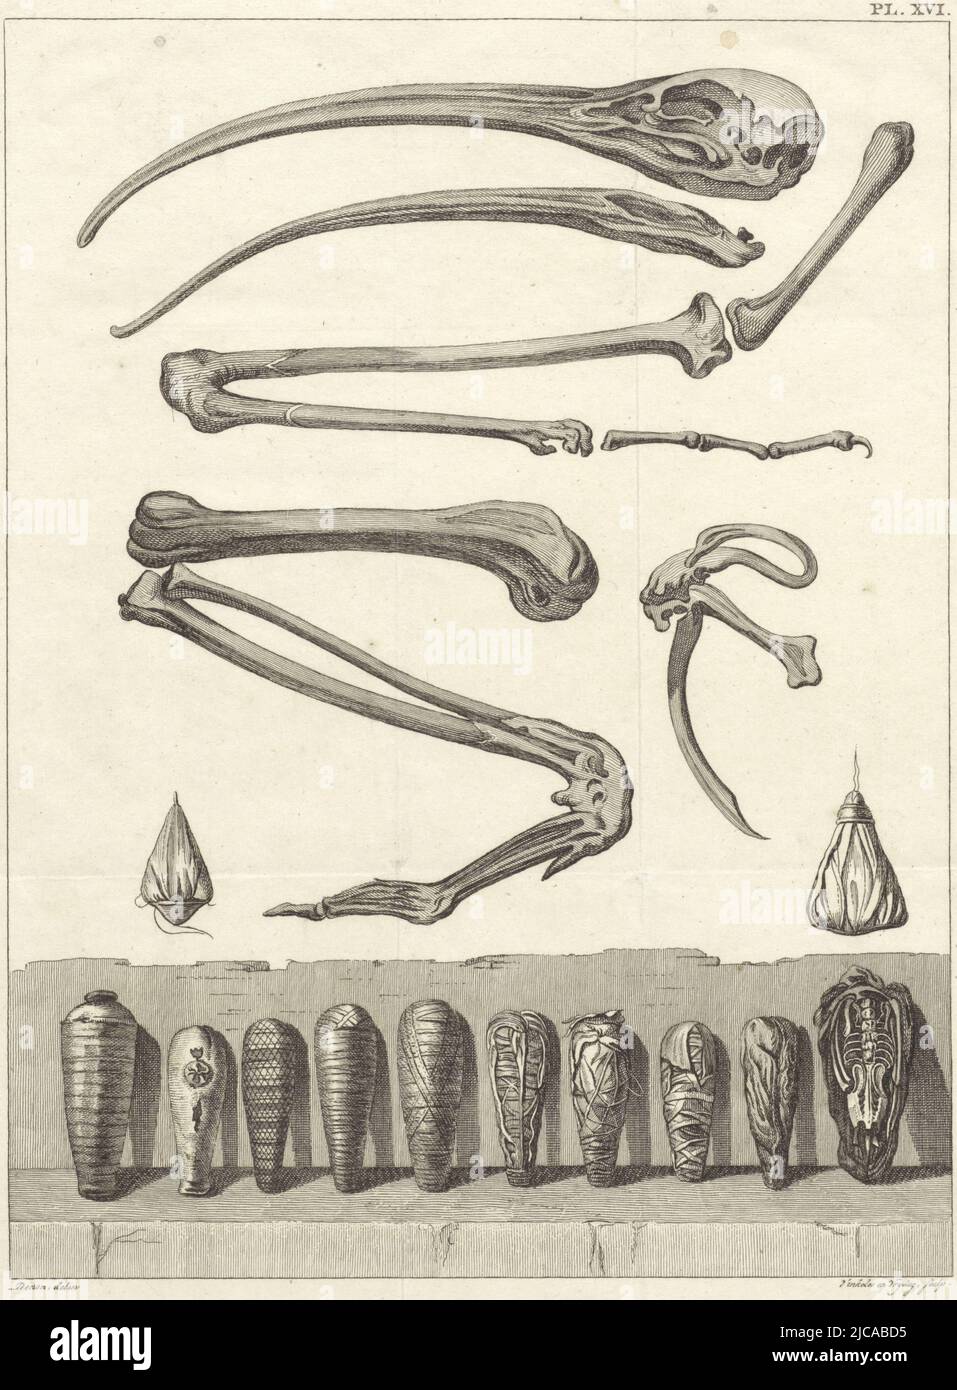 Ossa di un Ibis e al di sotto di dieci mummificati Ibises in alto a destra: PlXVI, ossa e mummificati Ibisses Munia di un Ibiss , tipografo: Reinier Vinkeles (i), (menzionato sull'oggetto), tipografo: Daniël Vrijdag, (menzionato sull'oggetto), disegnatore intermediario: Dominique Vivant Denon (barone), (menzionato sull'oggetto), 1803 - 1805), carta, Amsterdam, incisione, h 299 mm x l 212 mm Foto Stock